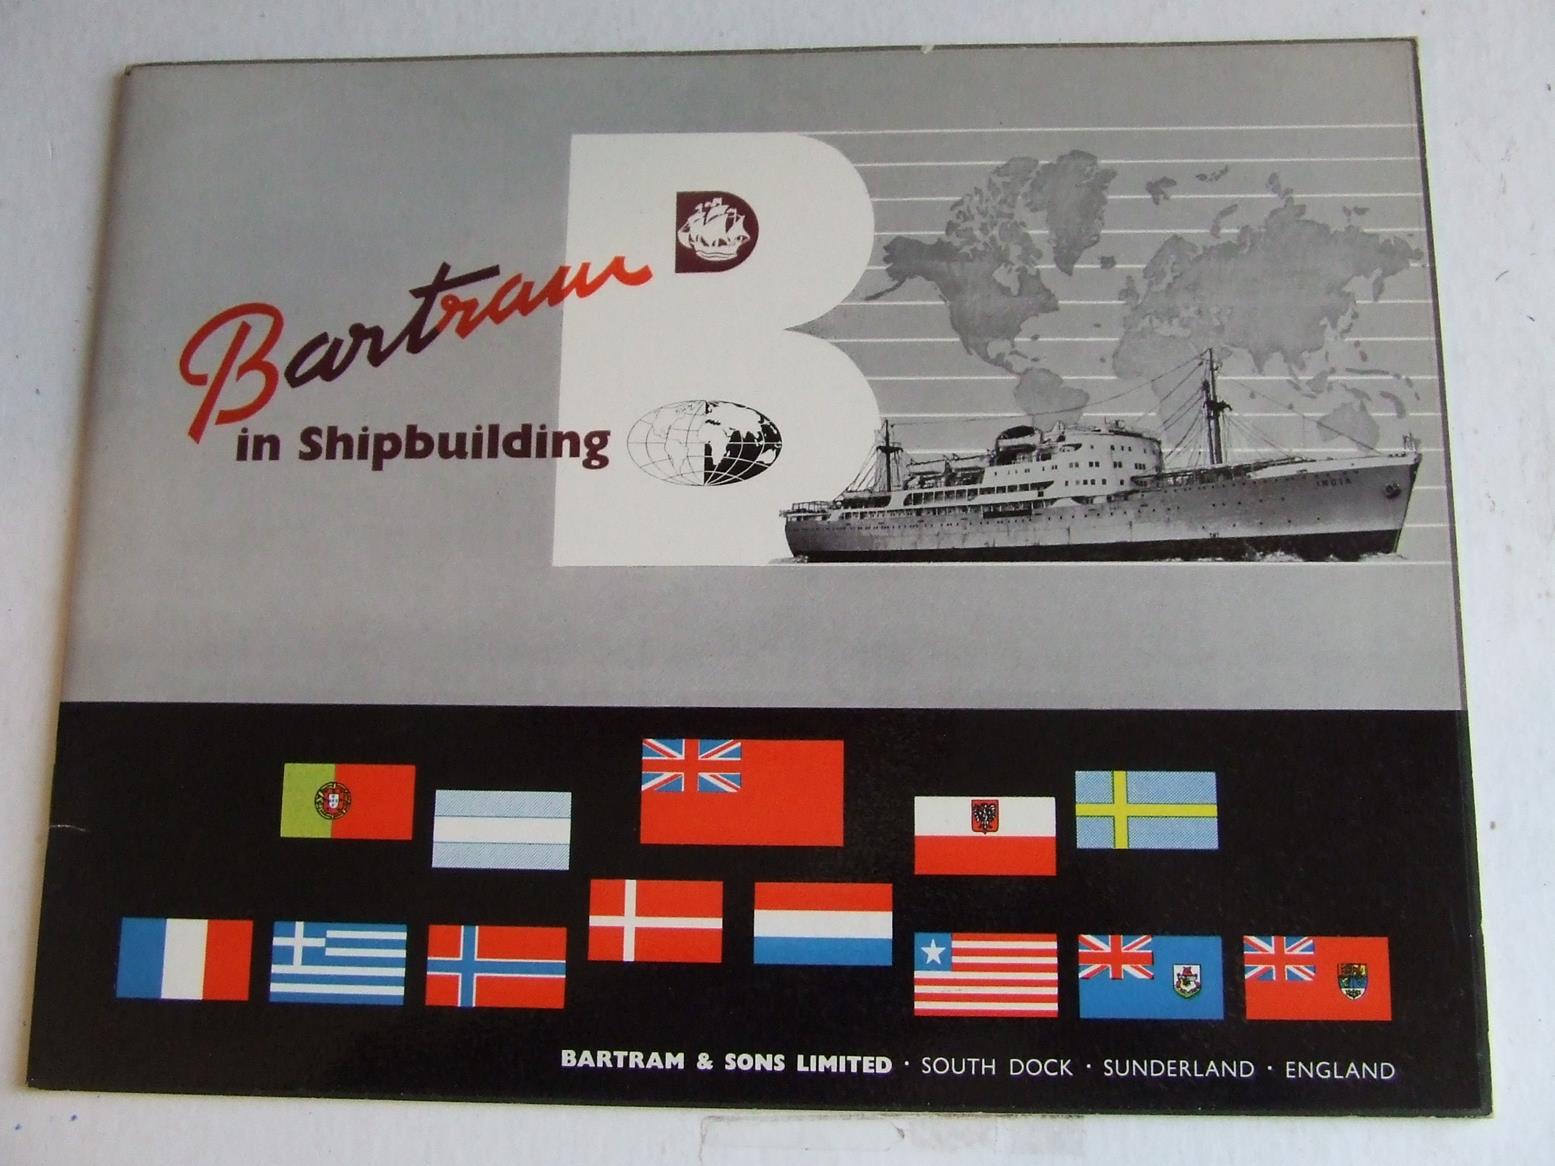 Bartram in Shipbuilding - Bartram & Sons Limited, South Dock, Sunderland